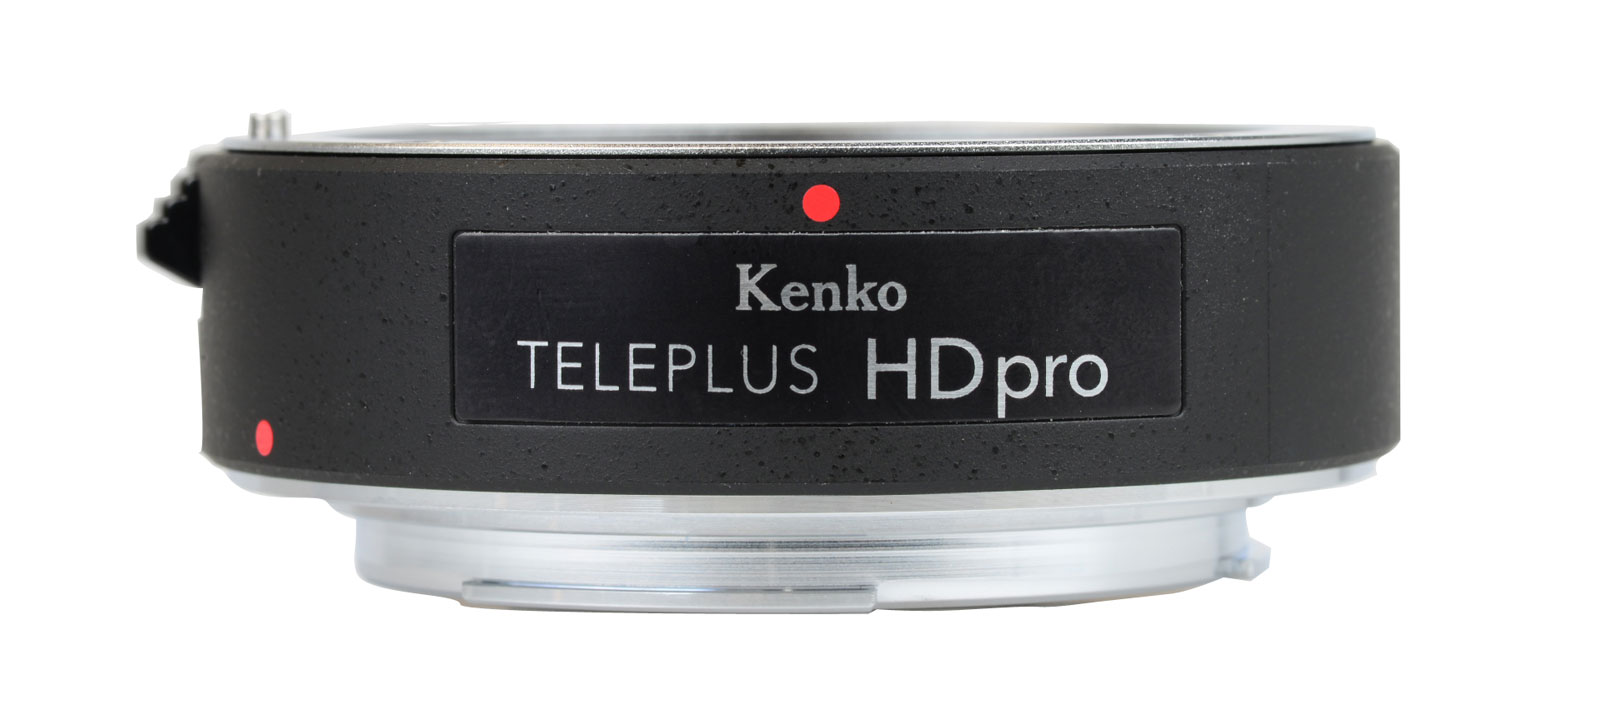 Kenko TELEPLUS HD pro 1.4x DGX (height 2cm approx.)